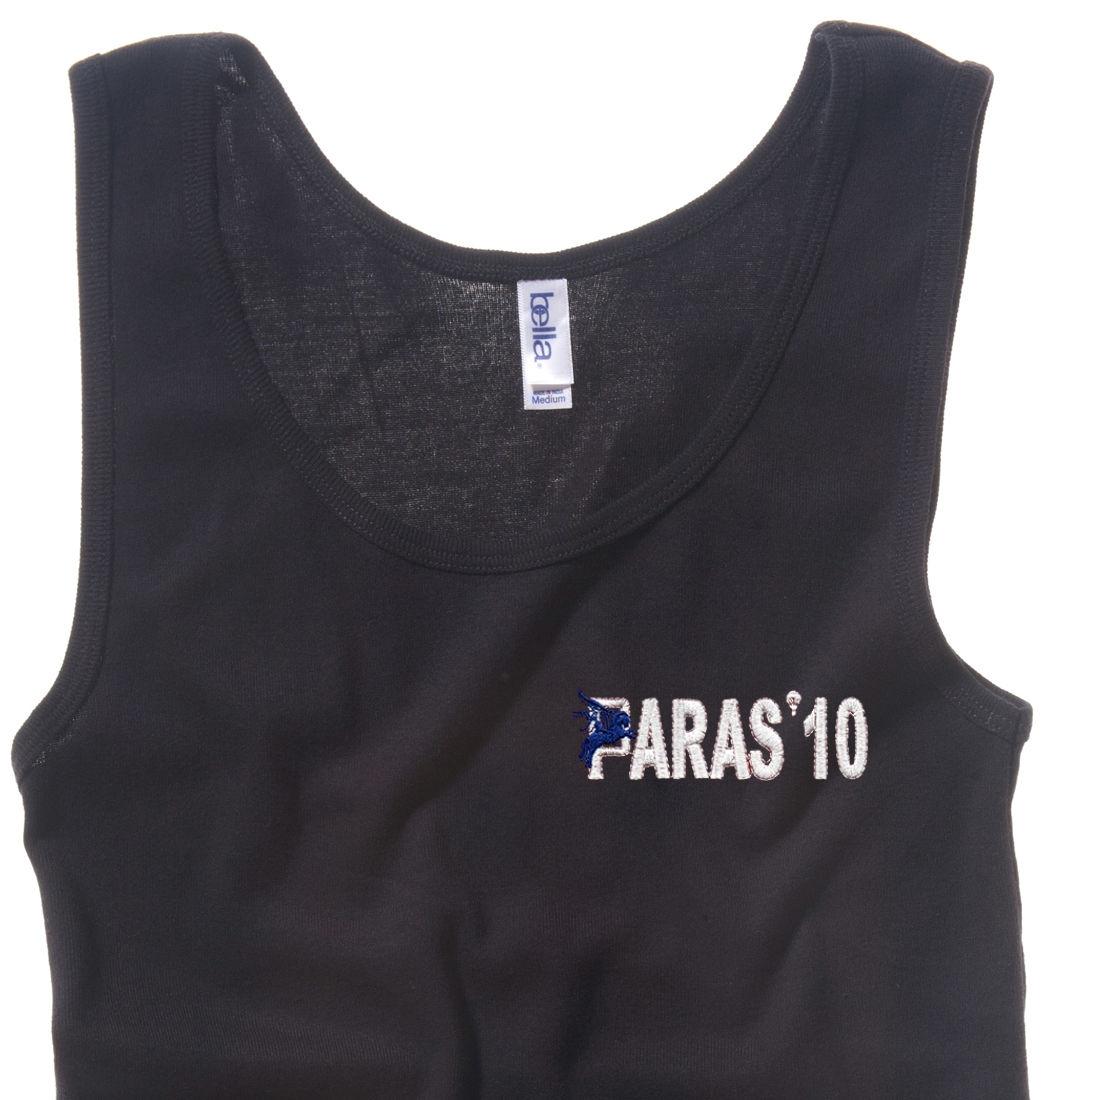 Lady's Vest - Black - Paras 10